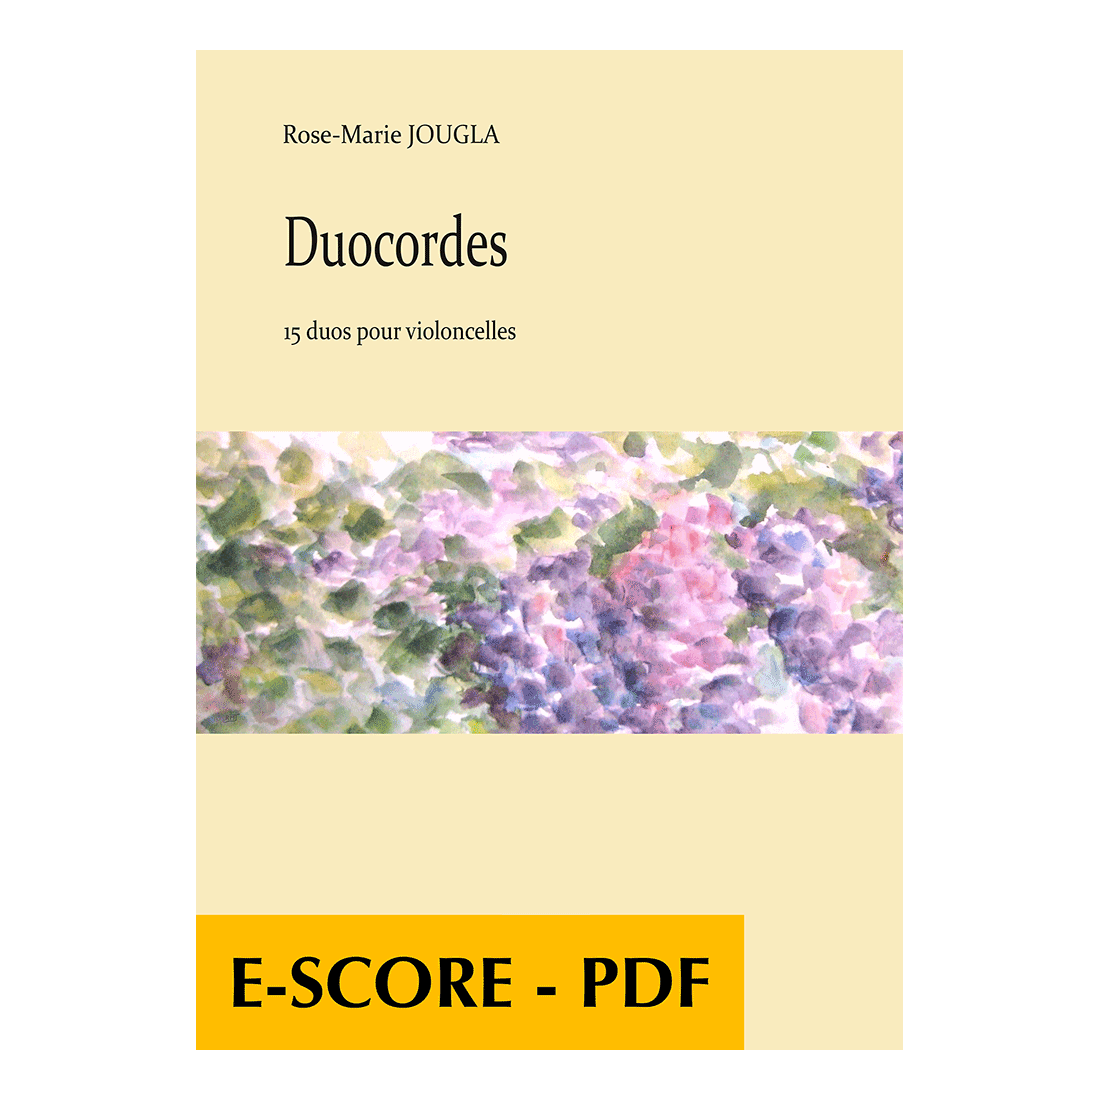 Duocordes - 15 leichte Duette für zwei Celli - E-score PDF